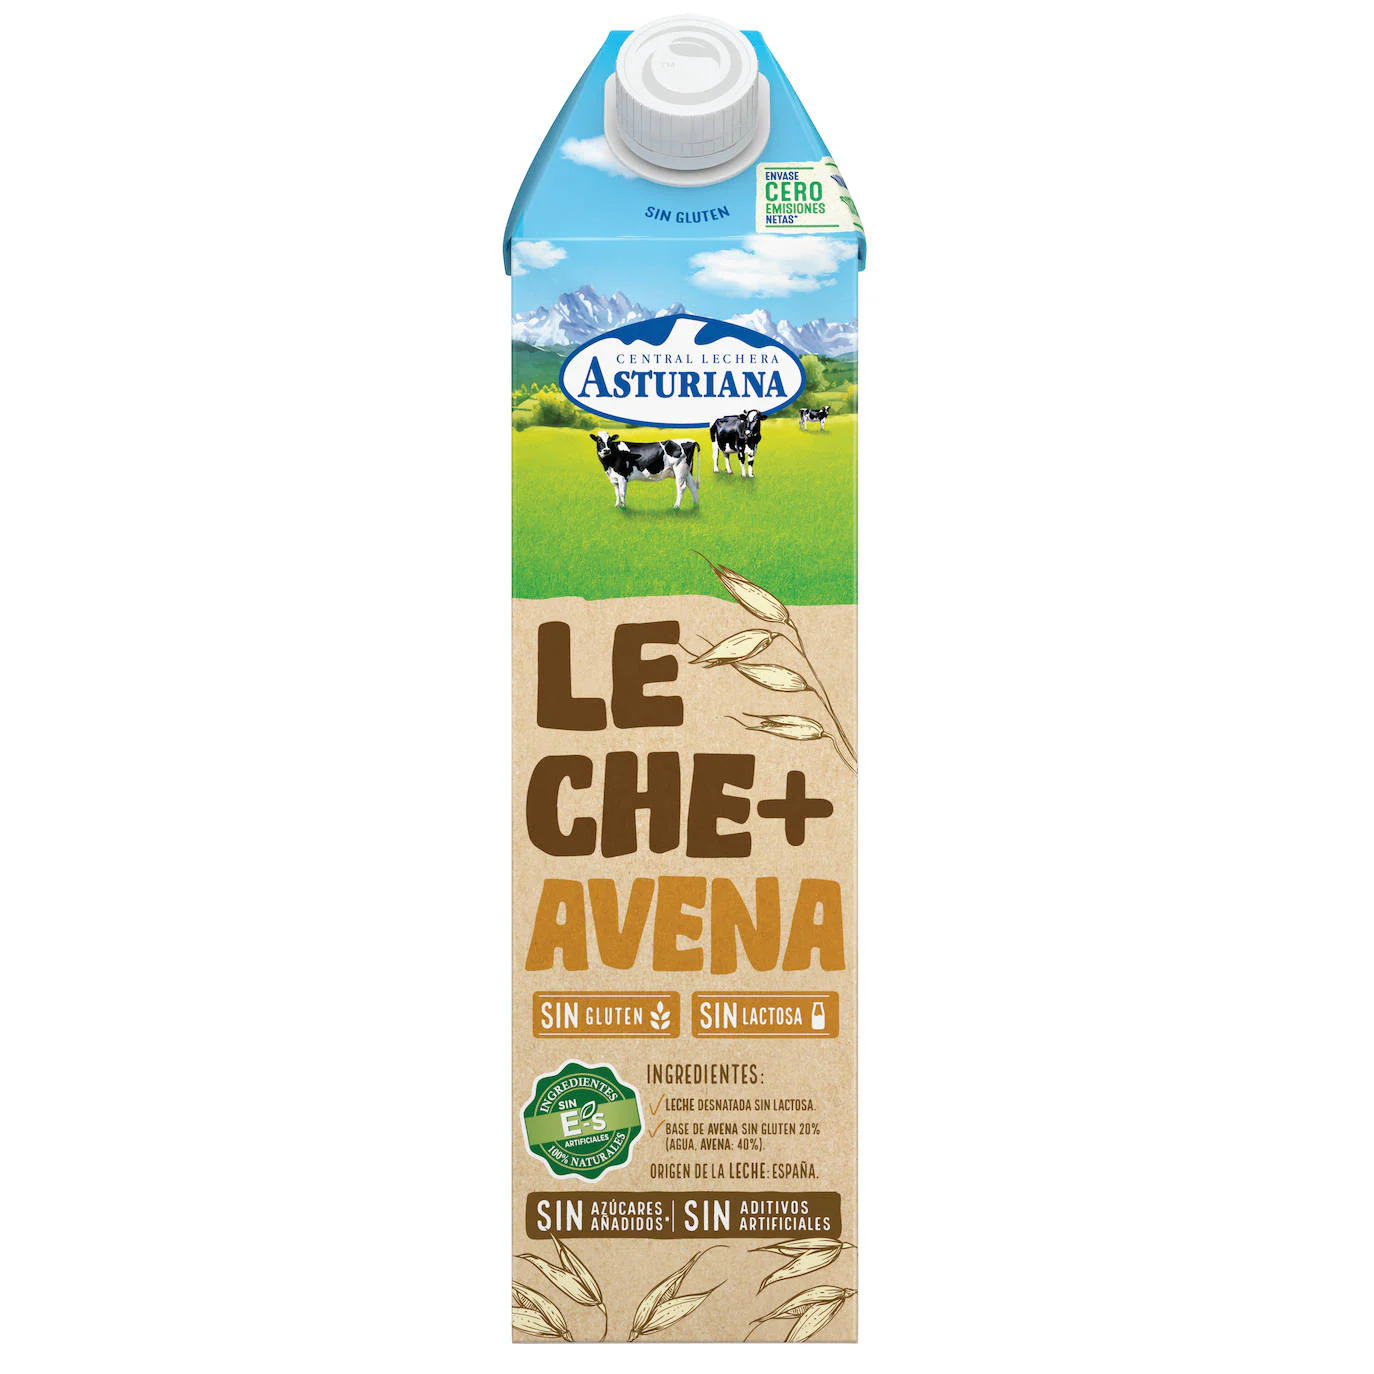 Central Lechera Asturiana saca al mercado su nueva leche con avena